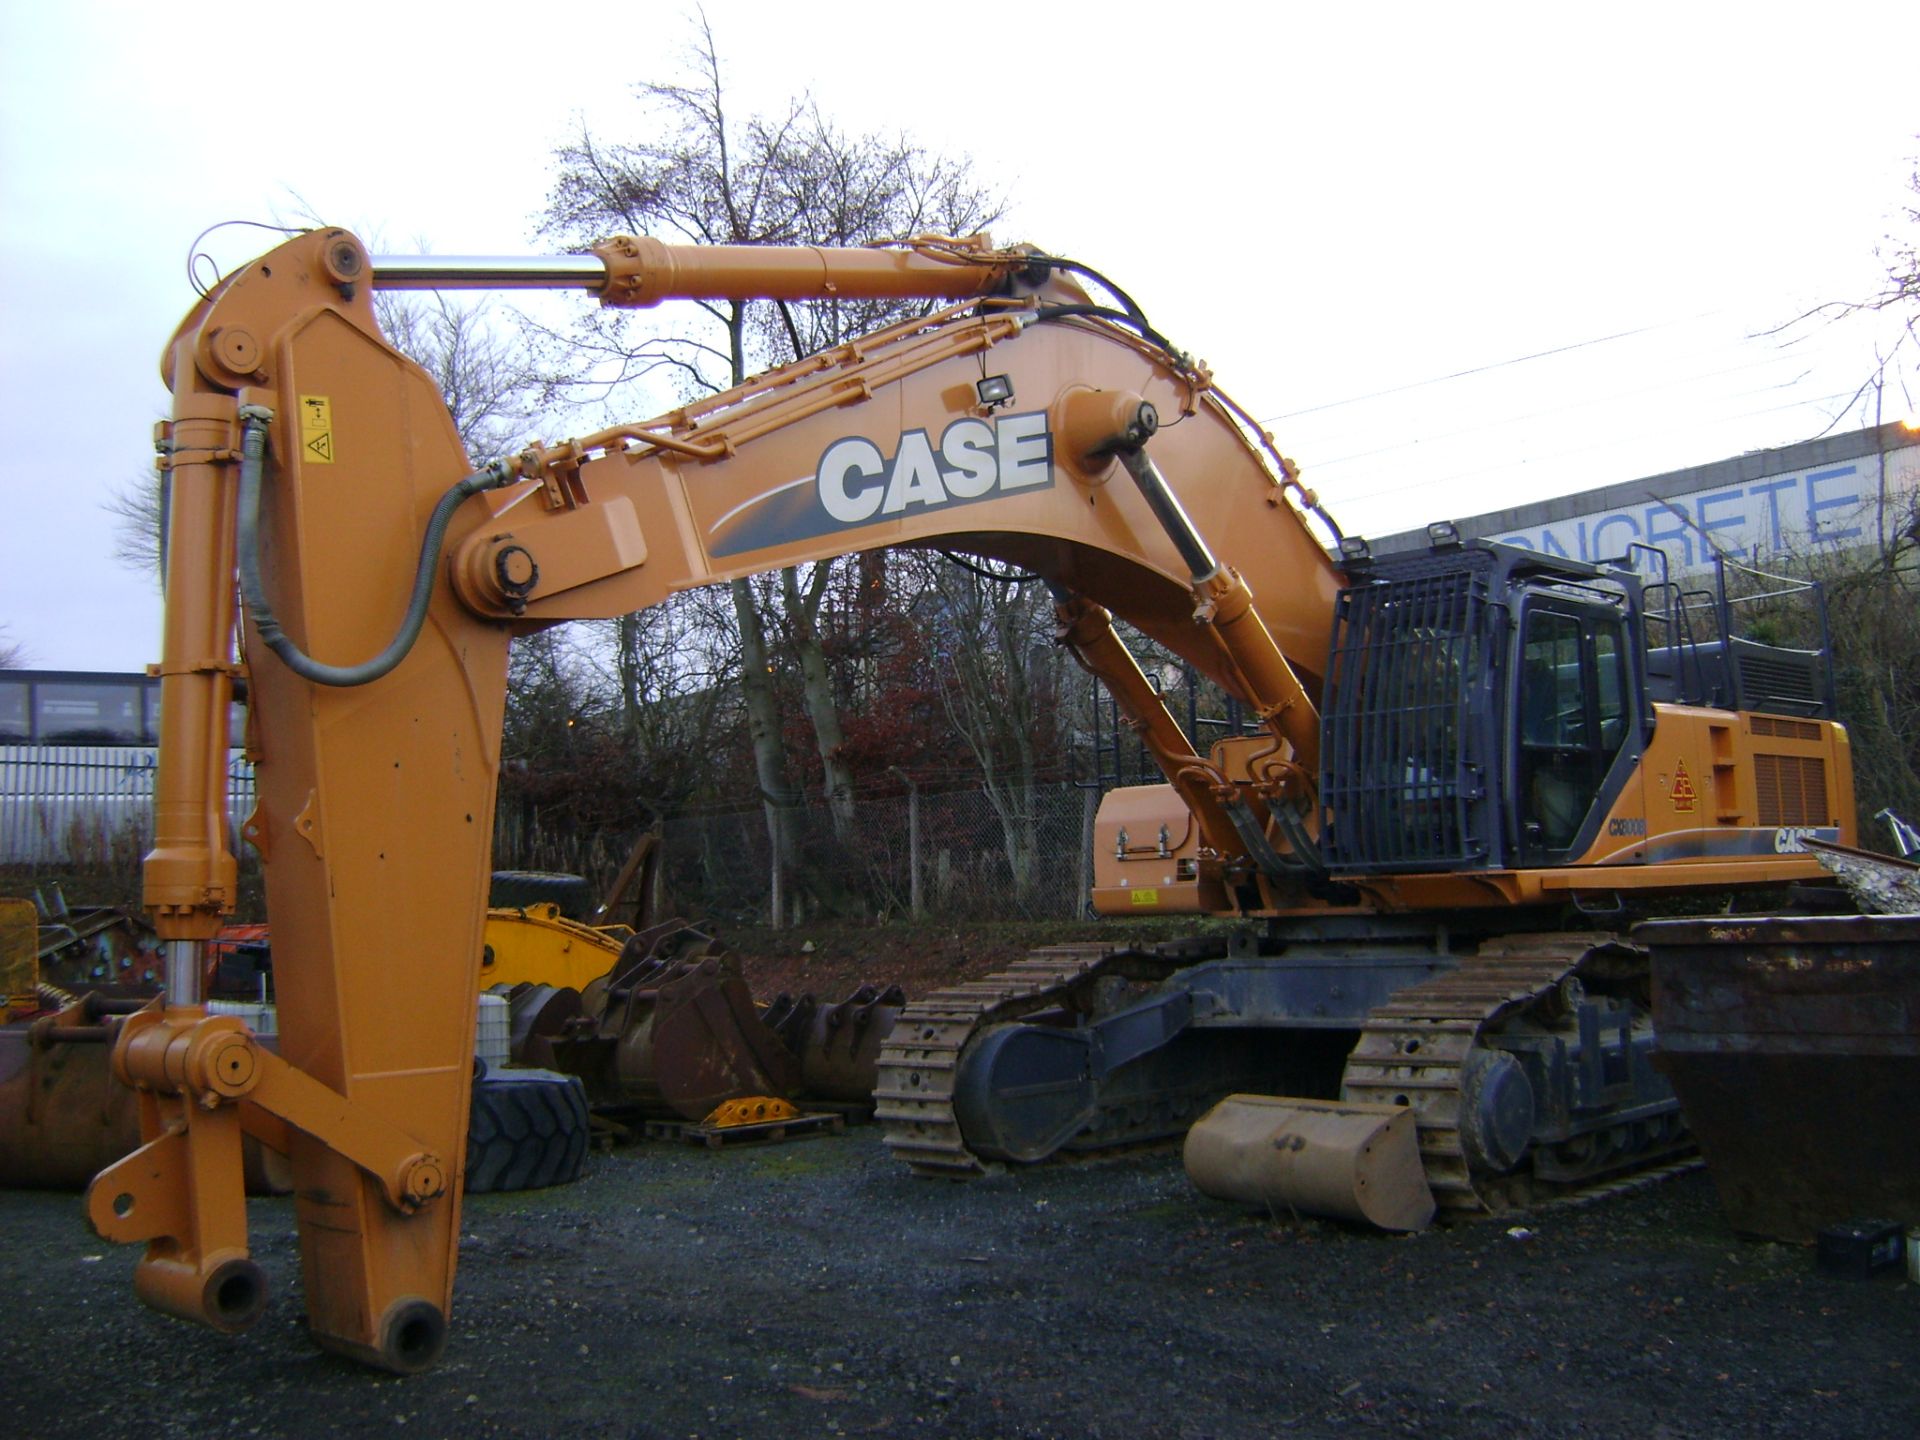 Case CX800 Tracked 80 Ton Excavator - Image 2 of 9